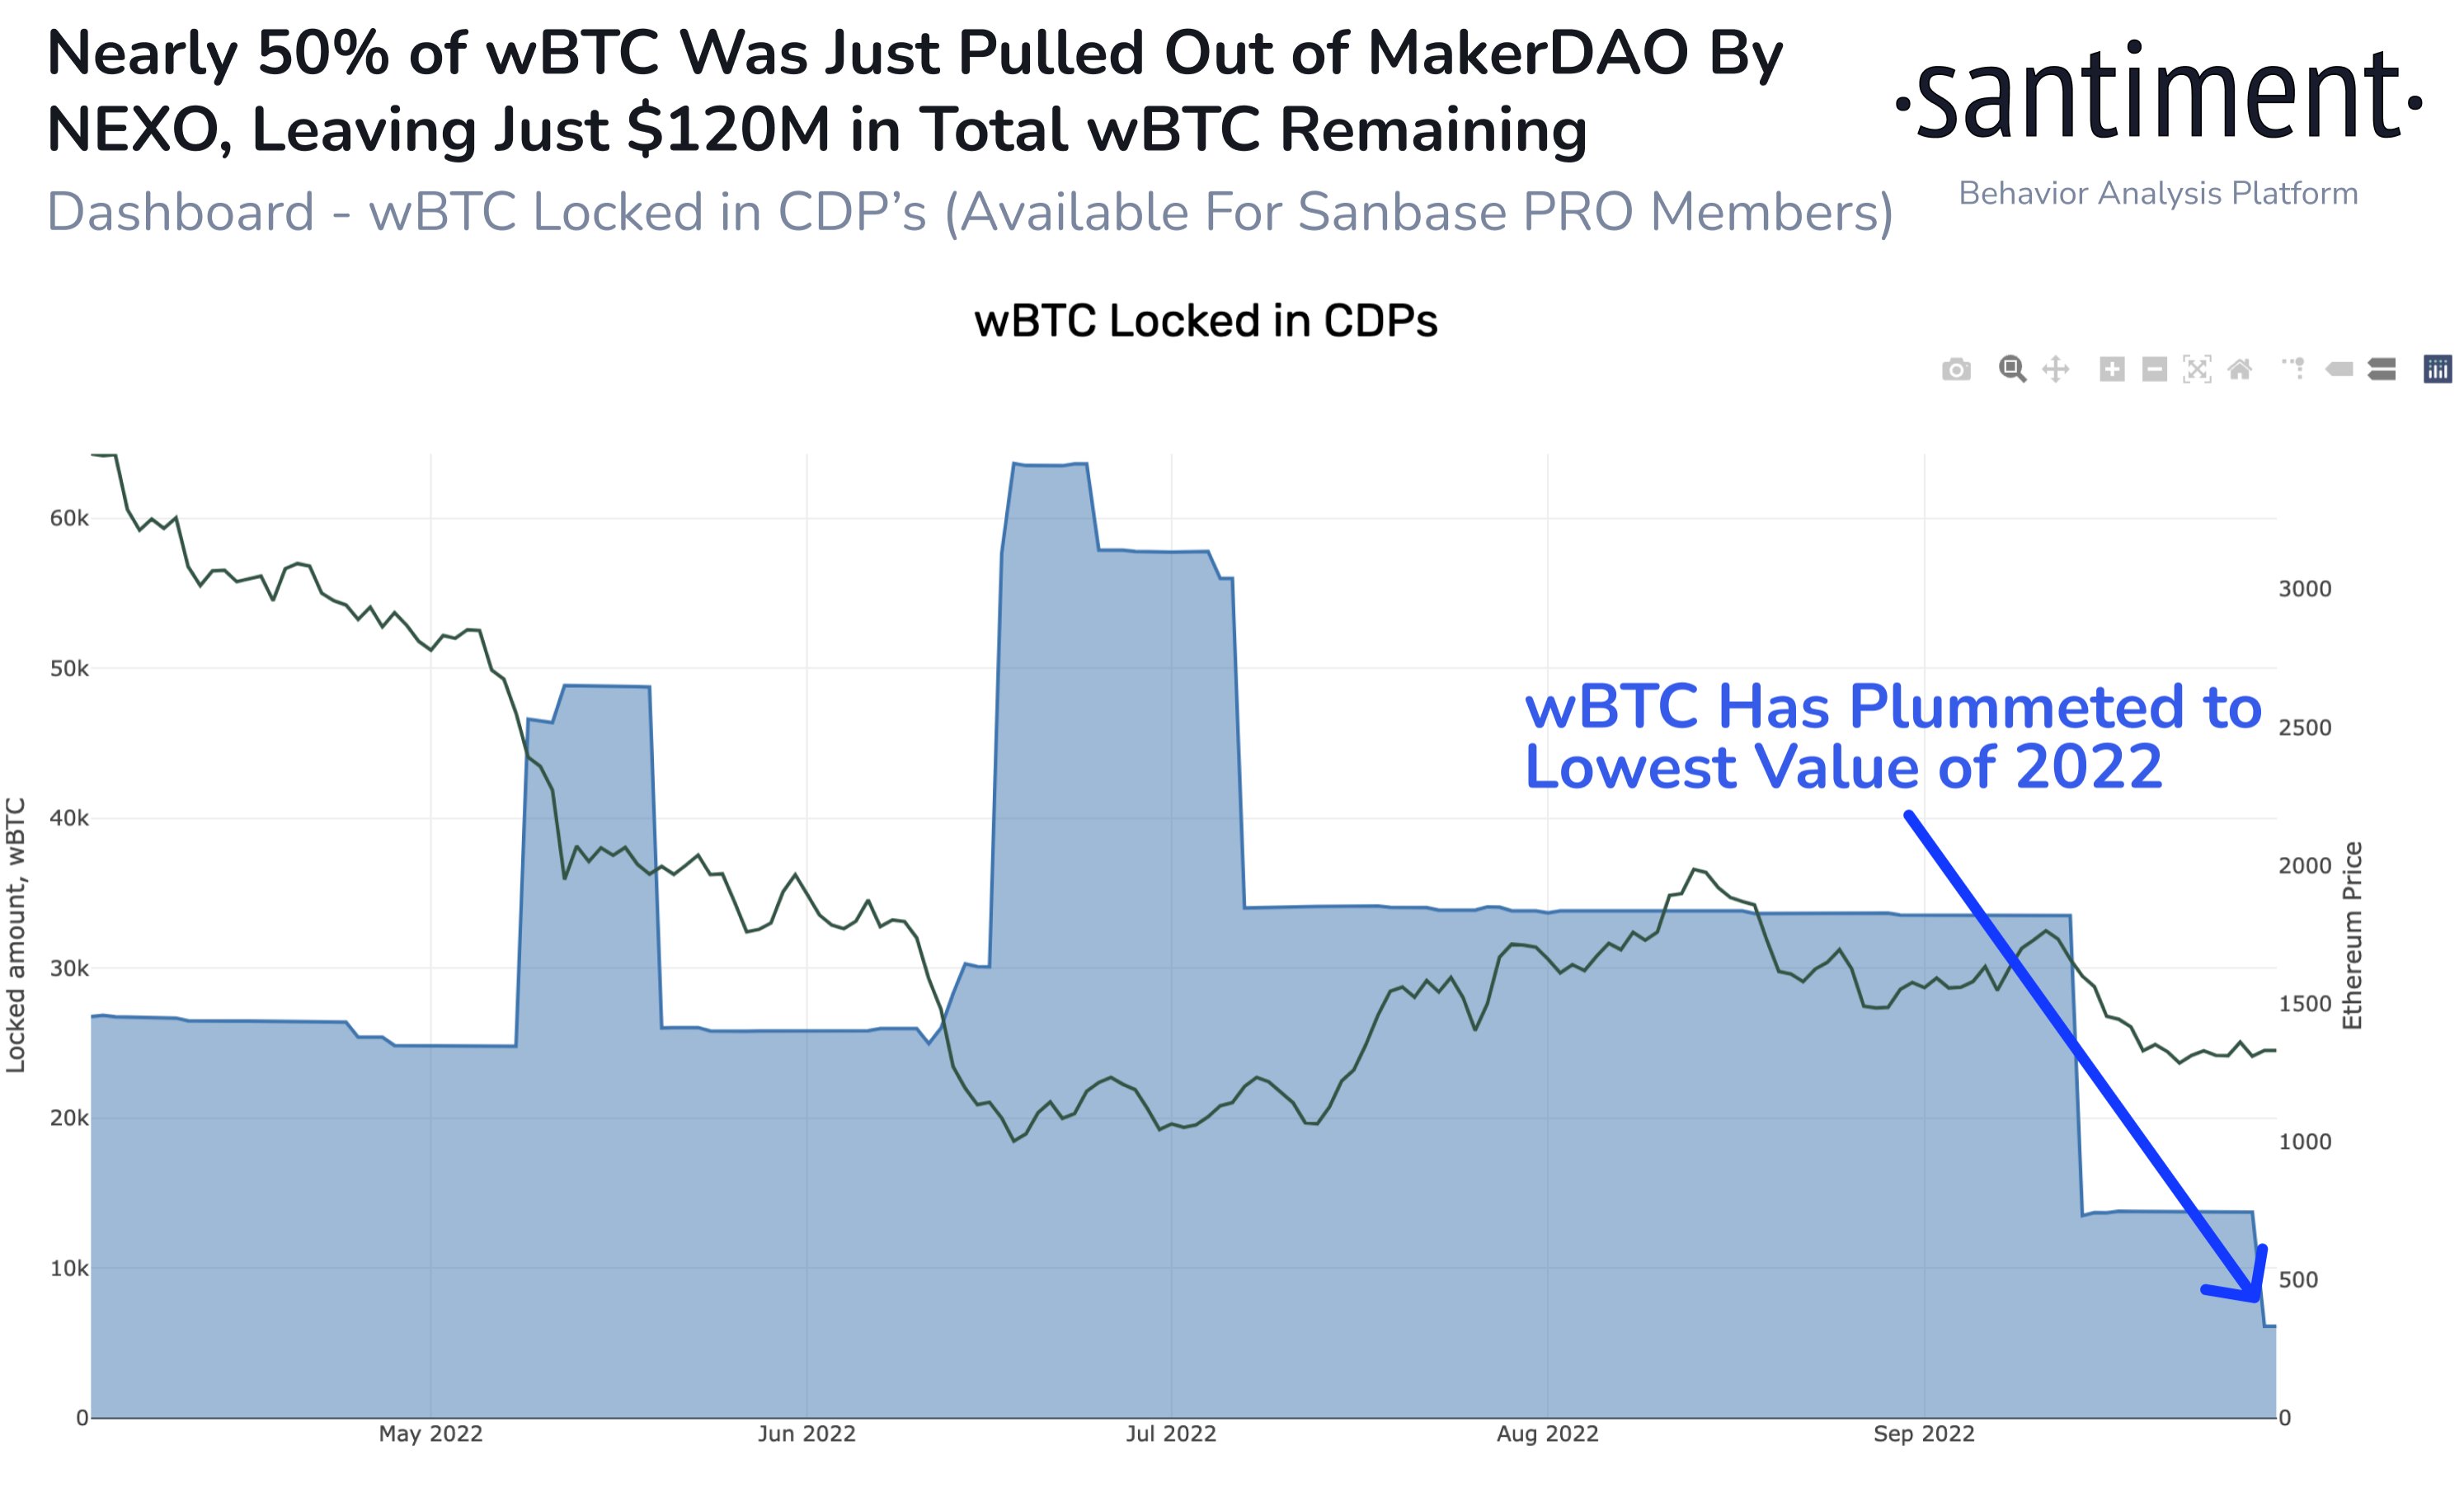 wBTC locked in CDPs